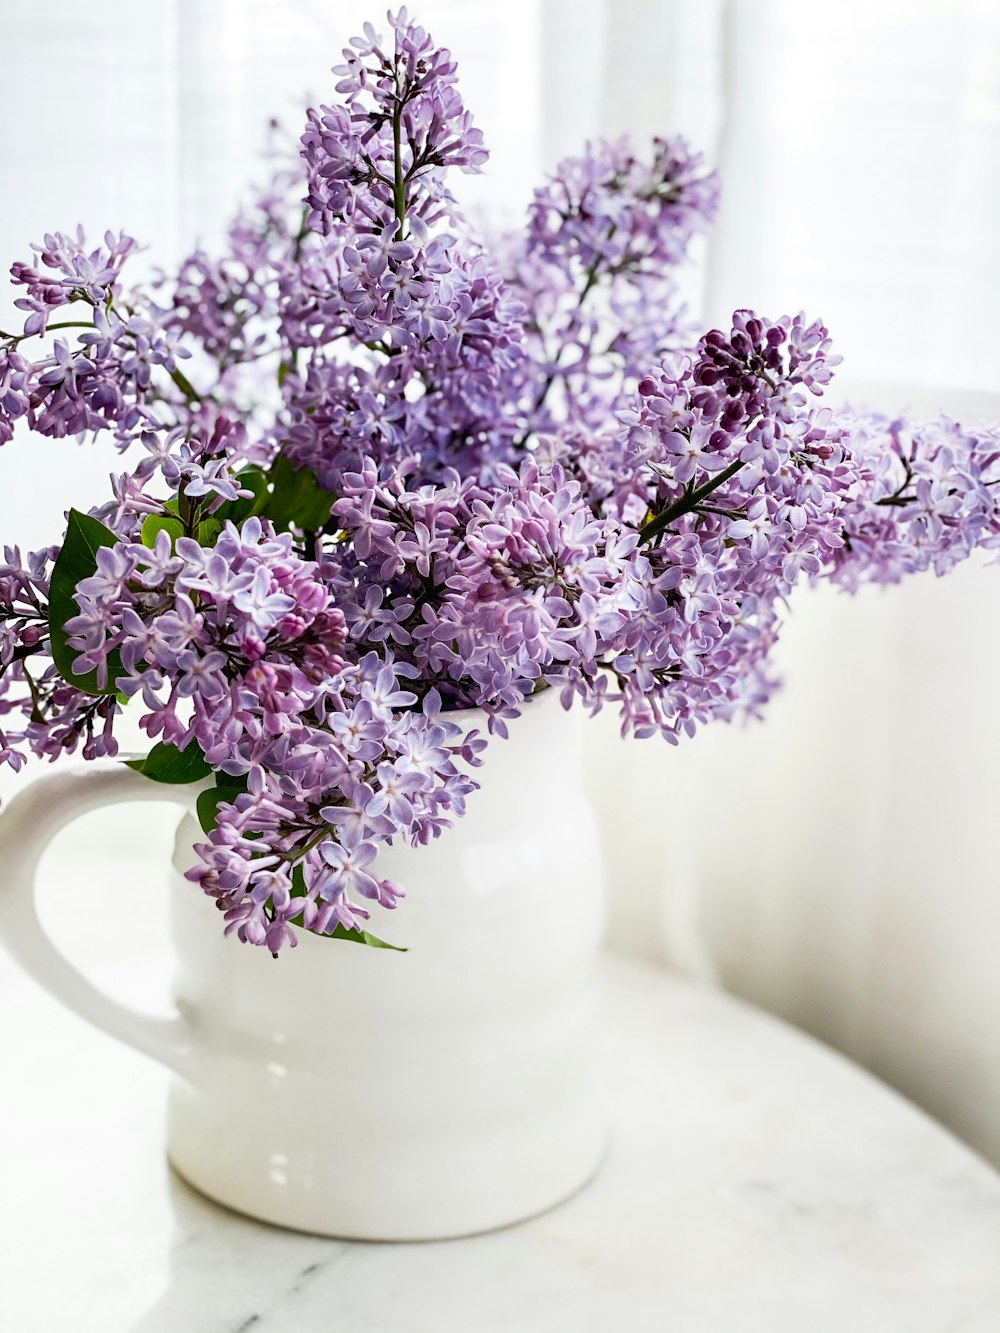 fiori viola in vaso di ceramica bianca